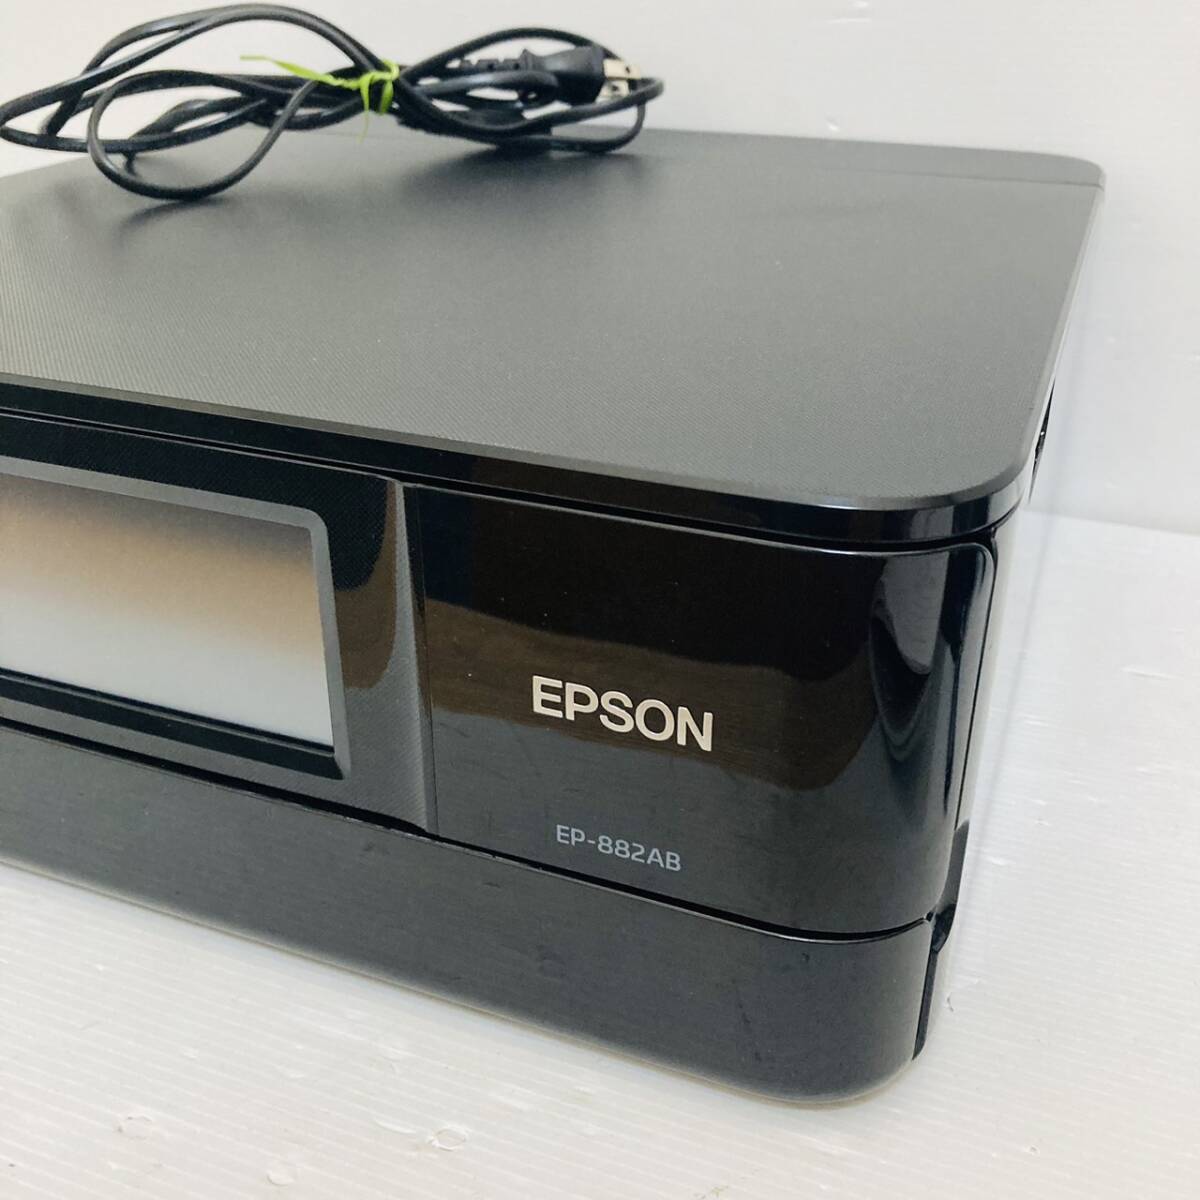 EPSON エプソン インクジェットプリンタ 複合機 EP-882AB 通電のみ確認 ジャンク扱い◇2020年製/Y053-22_画像3